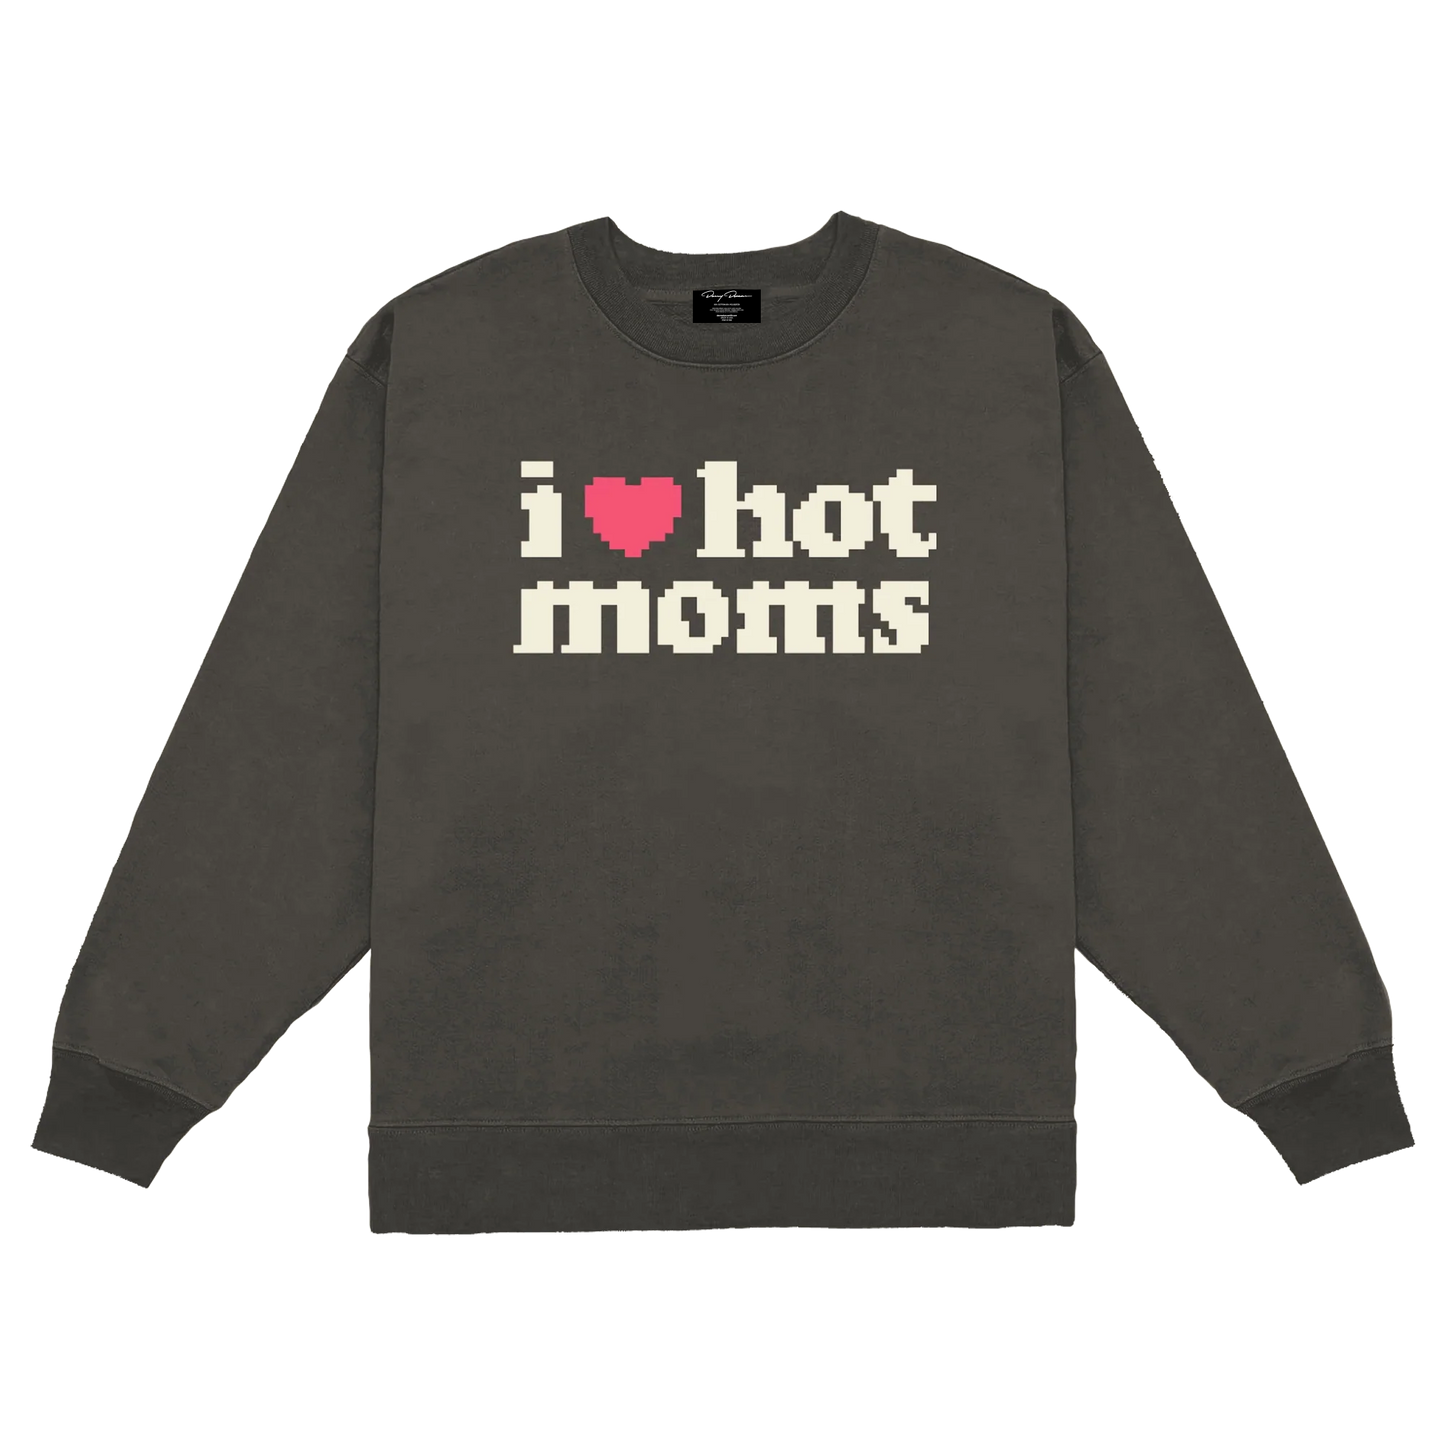 I Heart Hot Moms 8Bit Vintage Crewneck